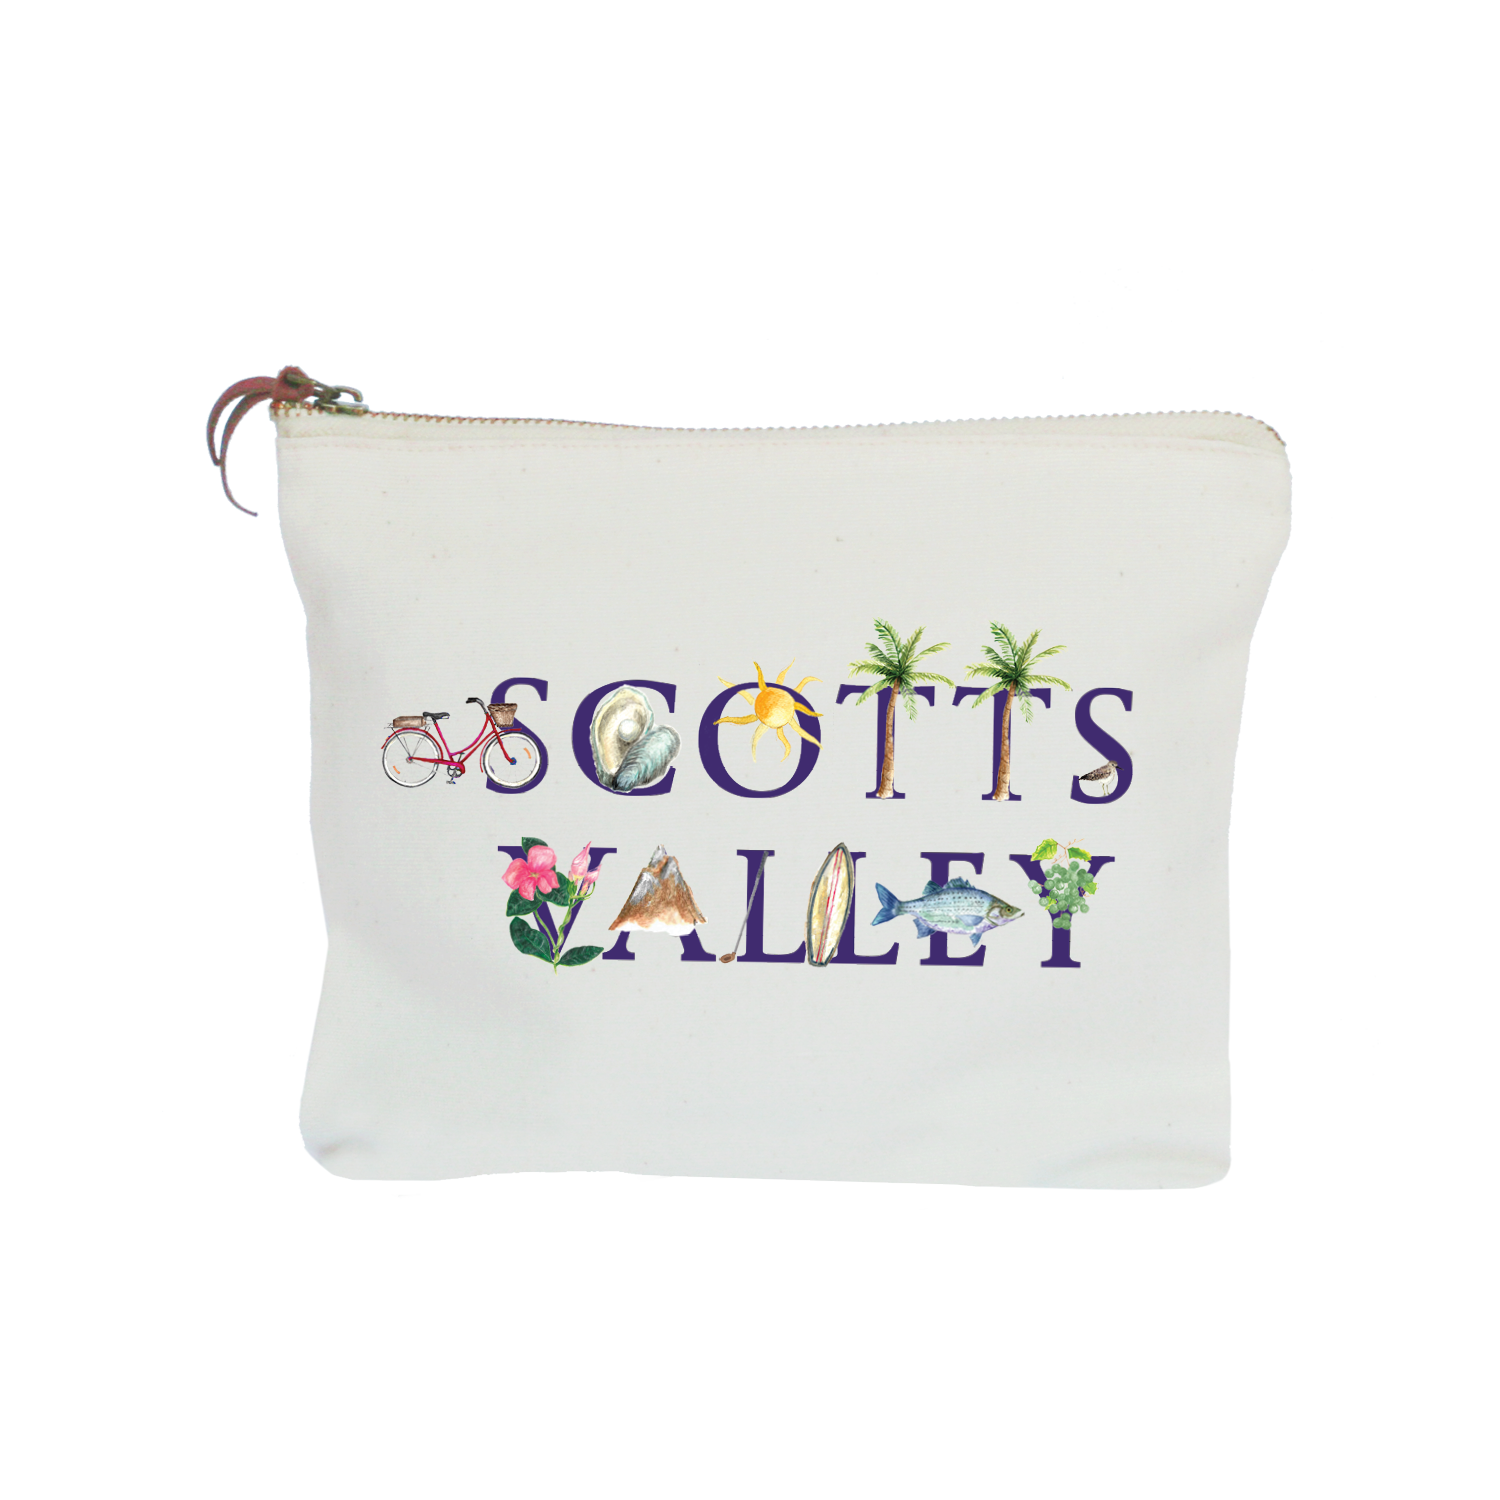 scotts valley zipper pouch